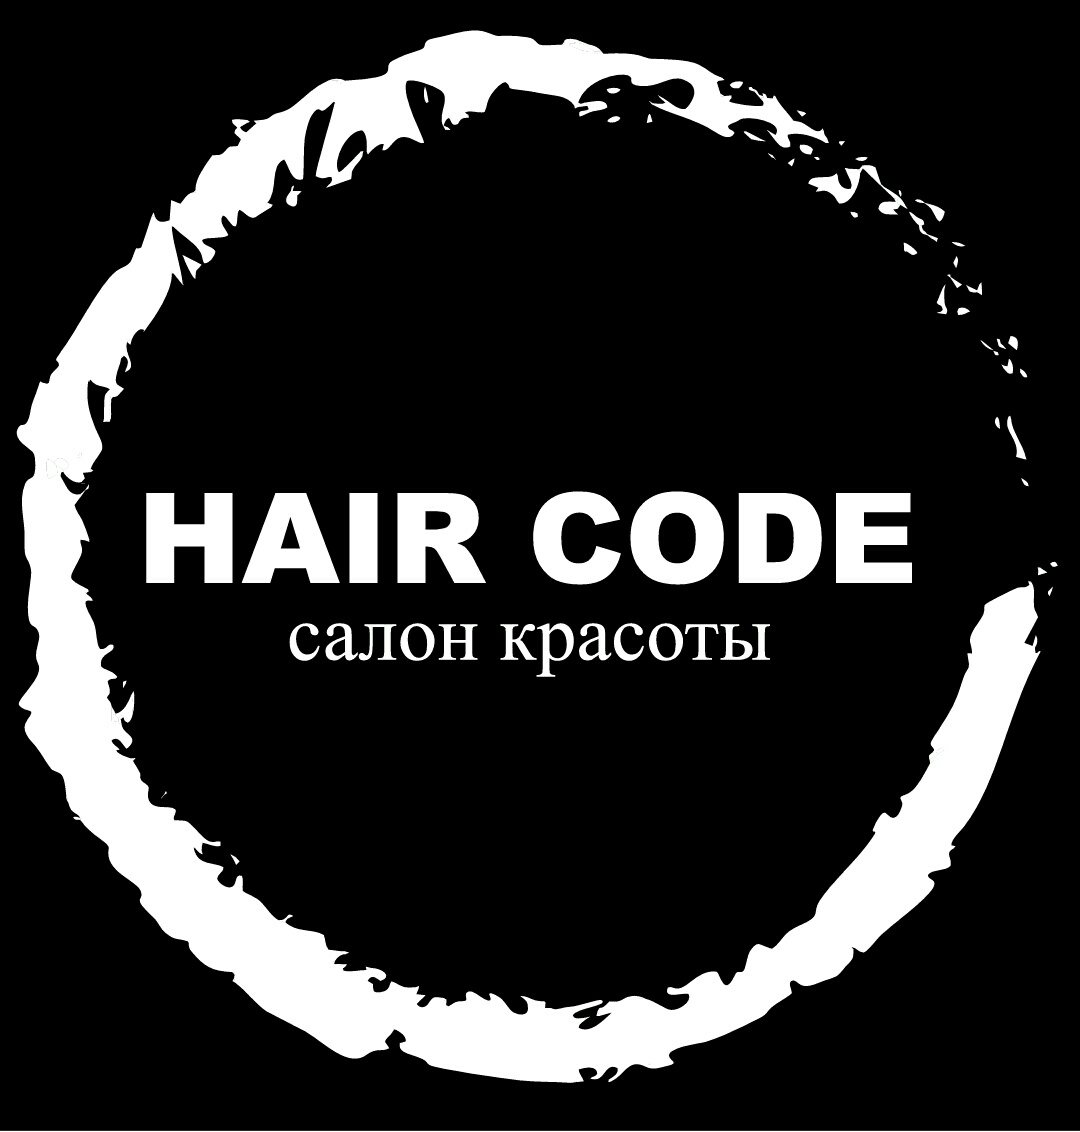 Hair Code